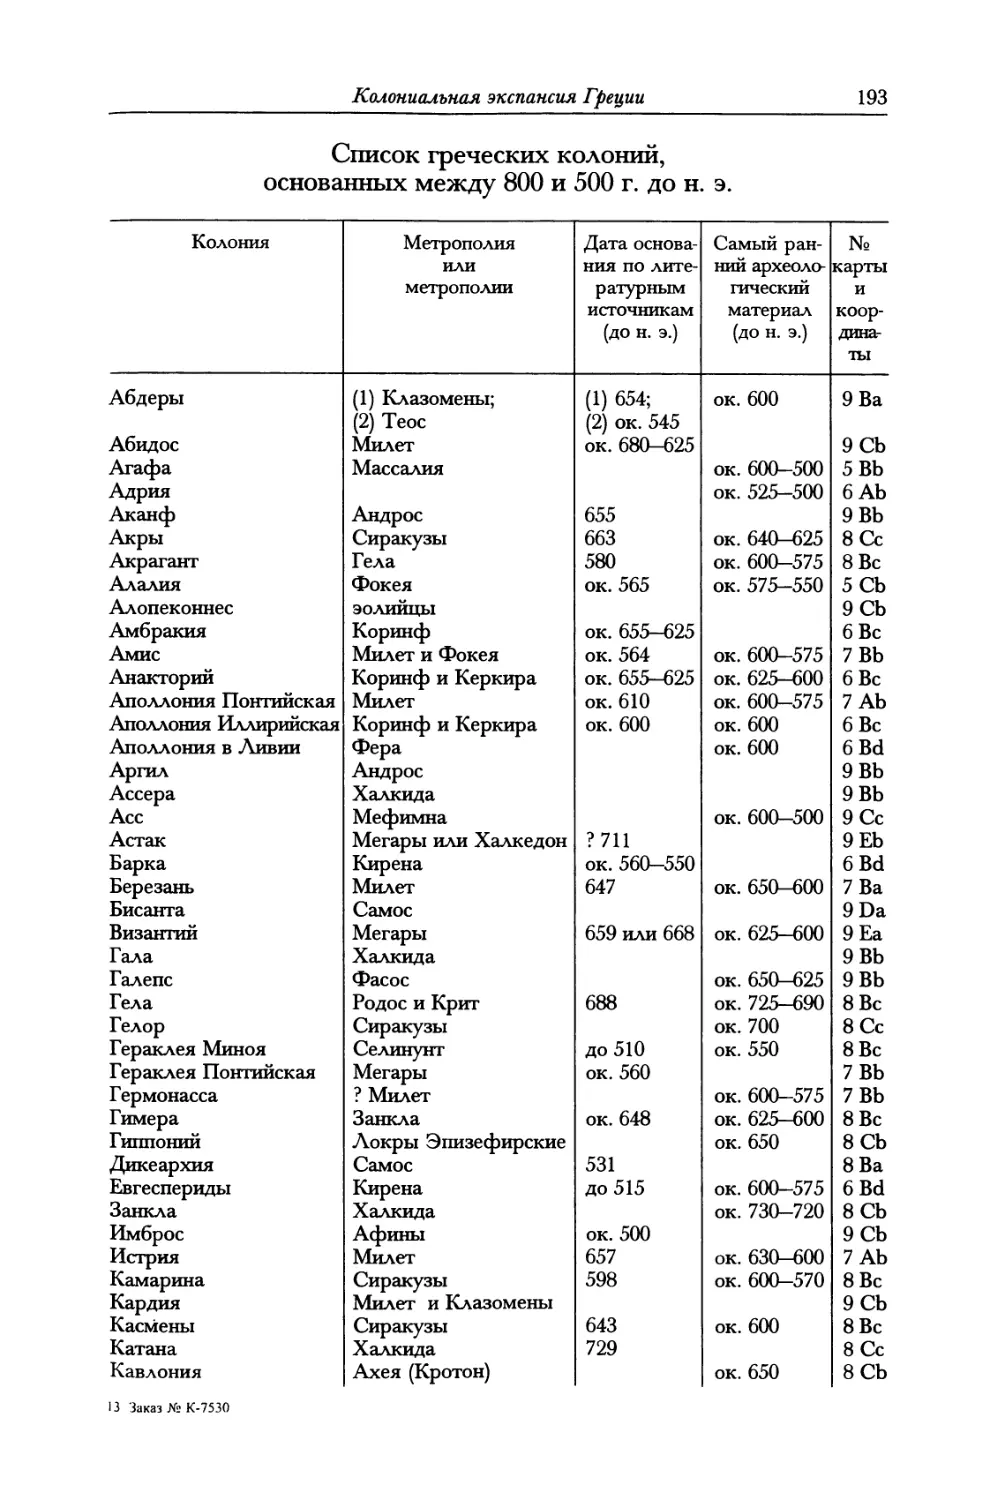 Список, греческих колоний, основанных между 800 и 500 г. до н. э.